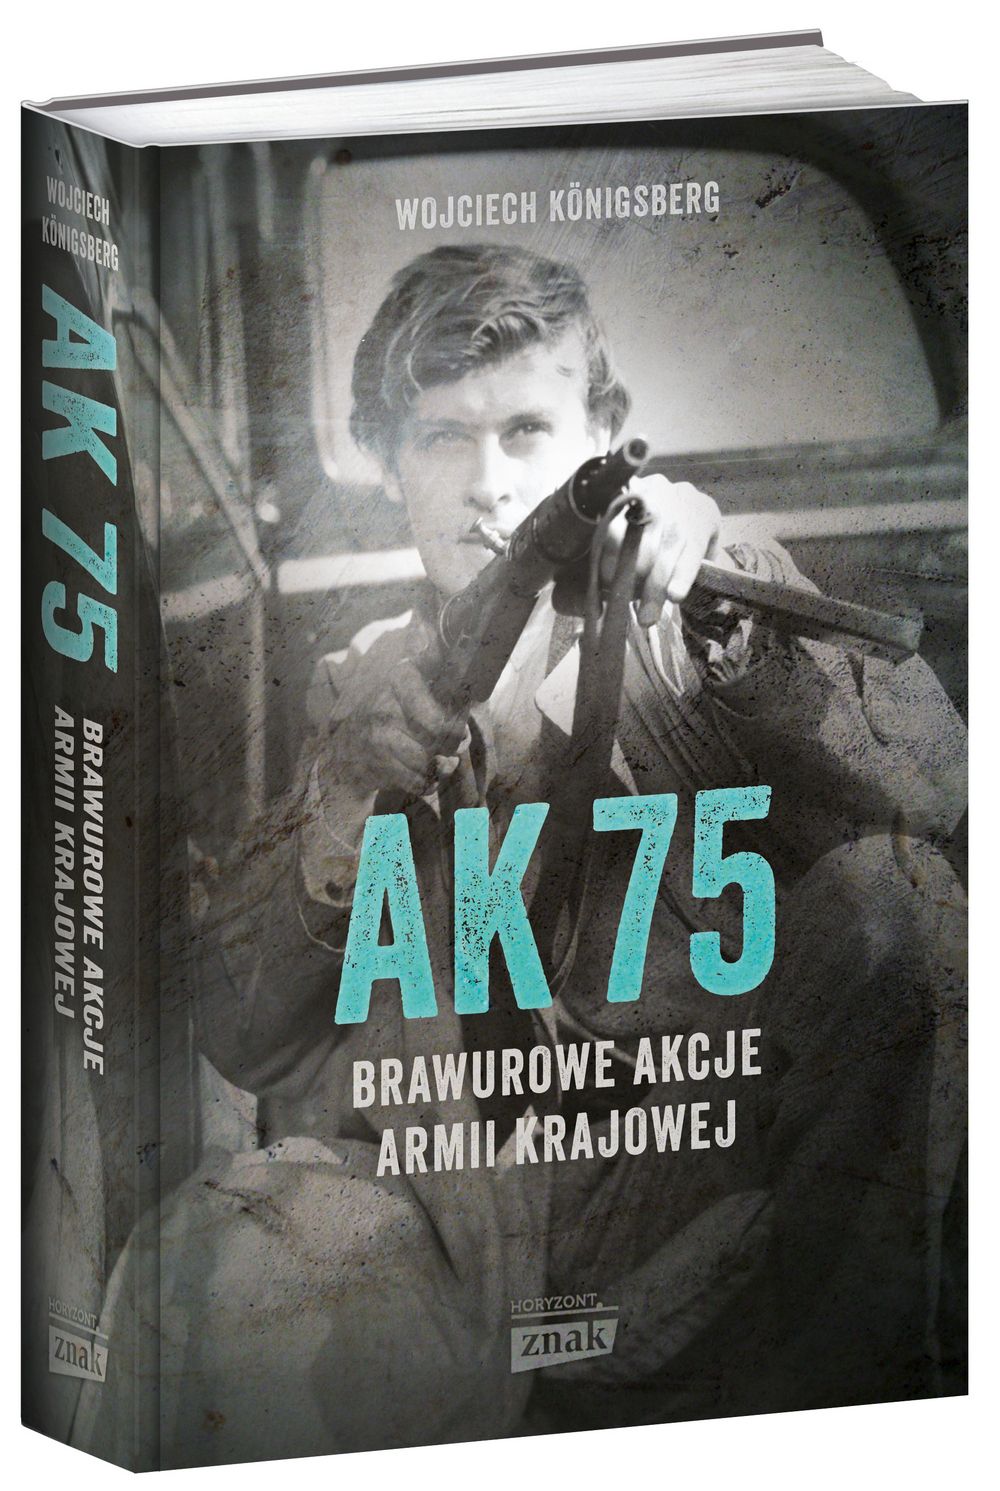 O innych sukcesach żołnierzy polskiego podziemia przeczytasz w książce Wojciecha Königsberga pod tytułem "AK75. Brawurowe akcje Armii Krajowej" (Znak Horyzont 2017).